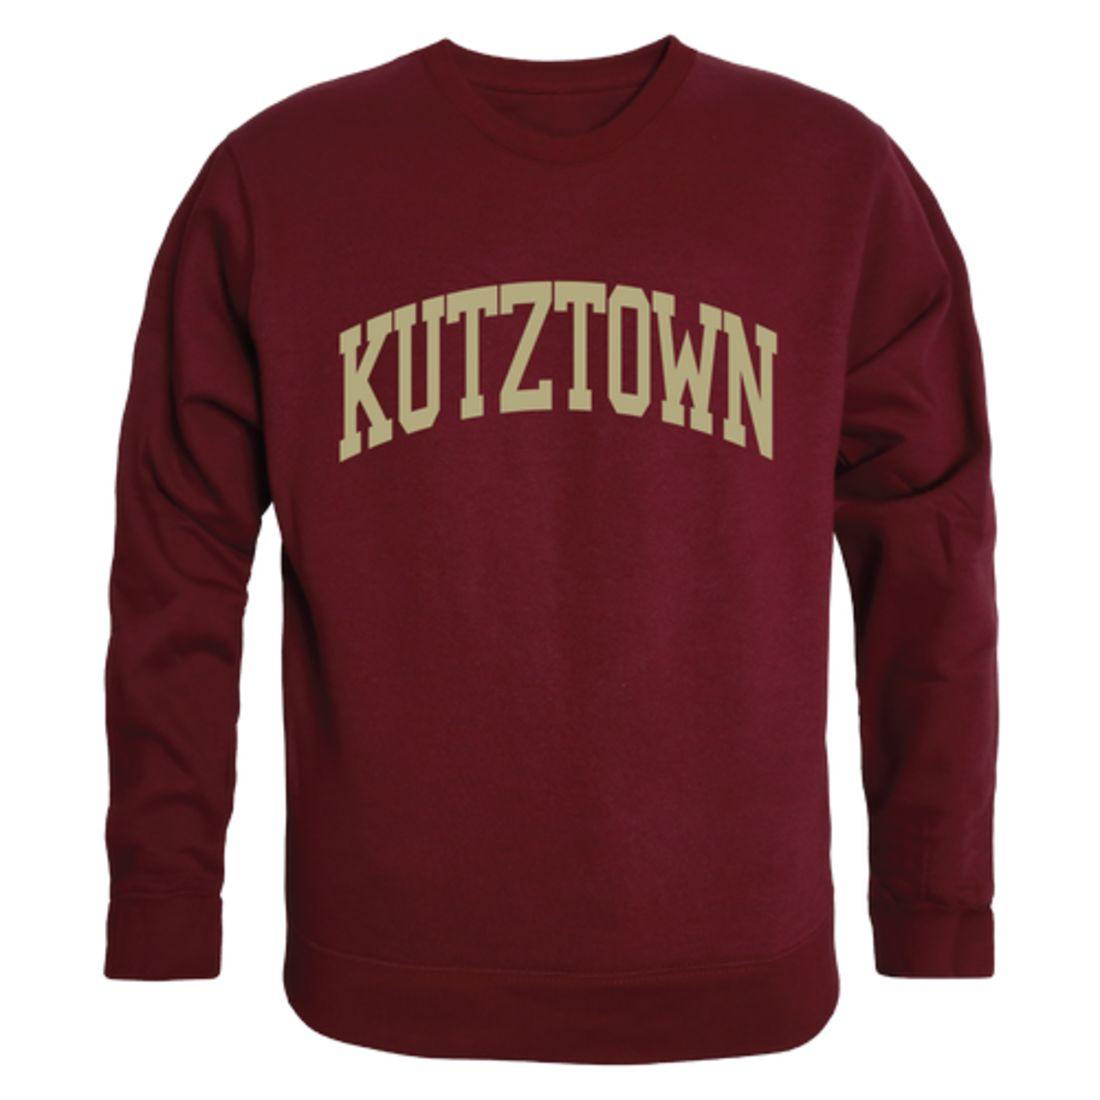 Kutztown University of Pennsylvania Golden Bears Arch Crewneck Pullover Sweatshirt Sweater Maroon-Campus-Wardrobe